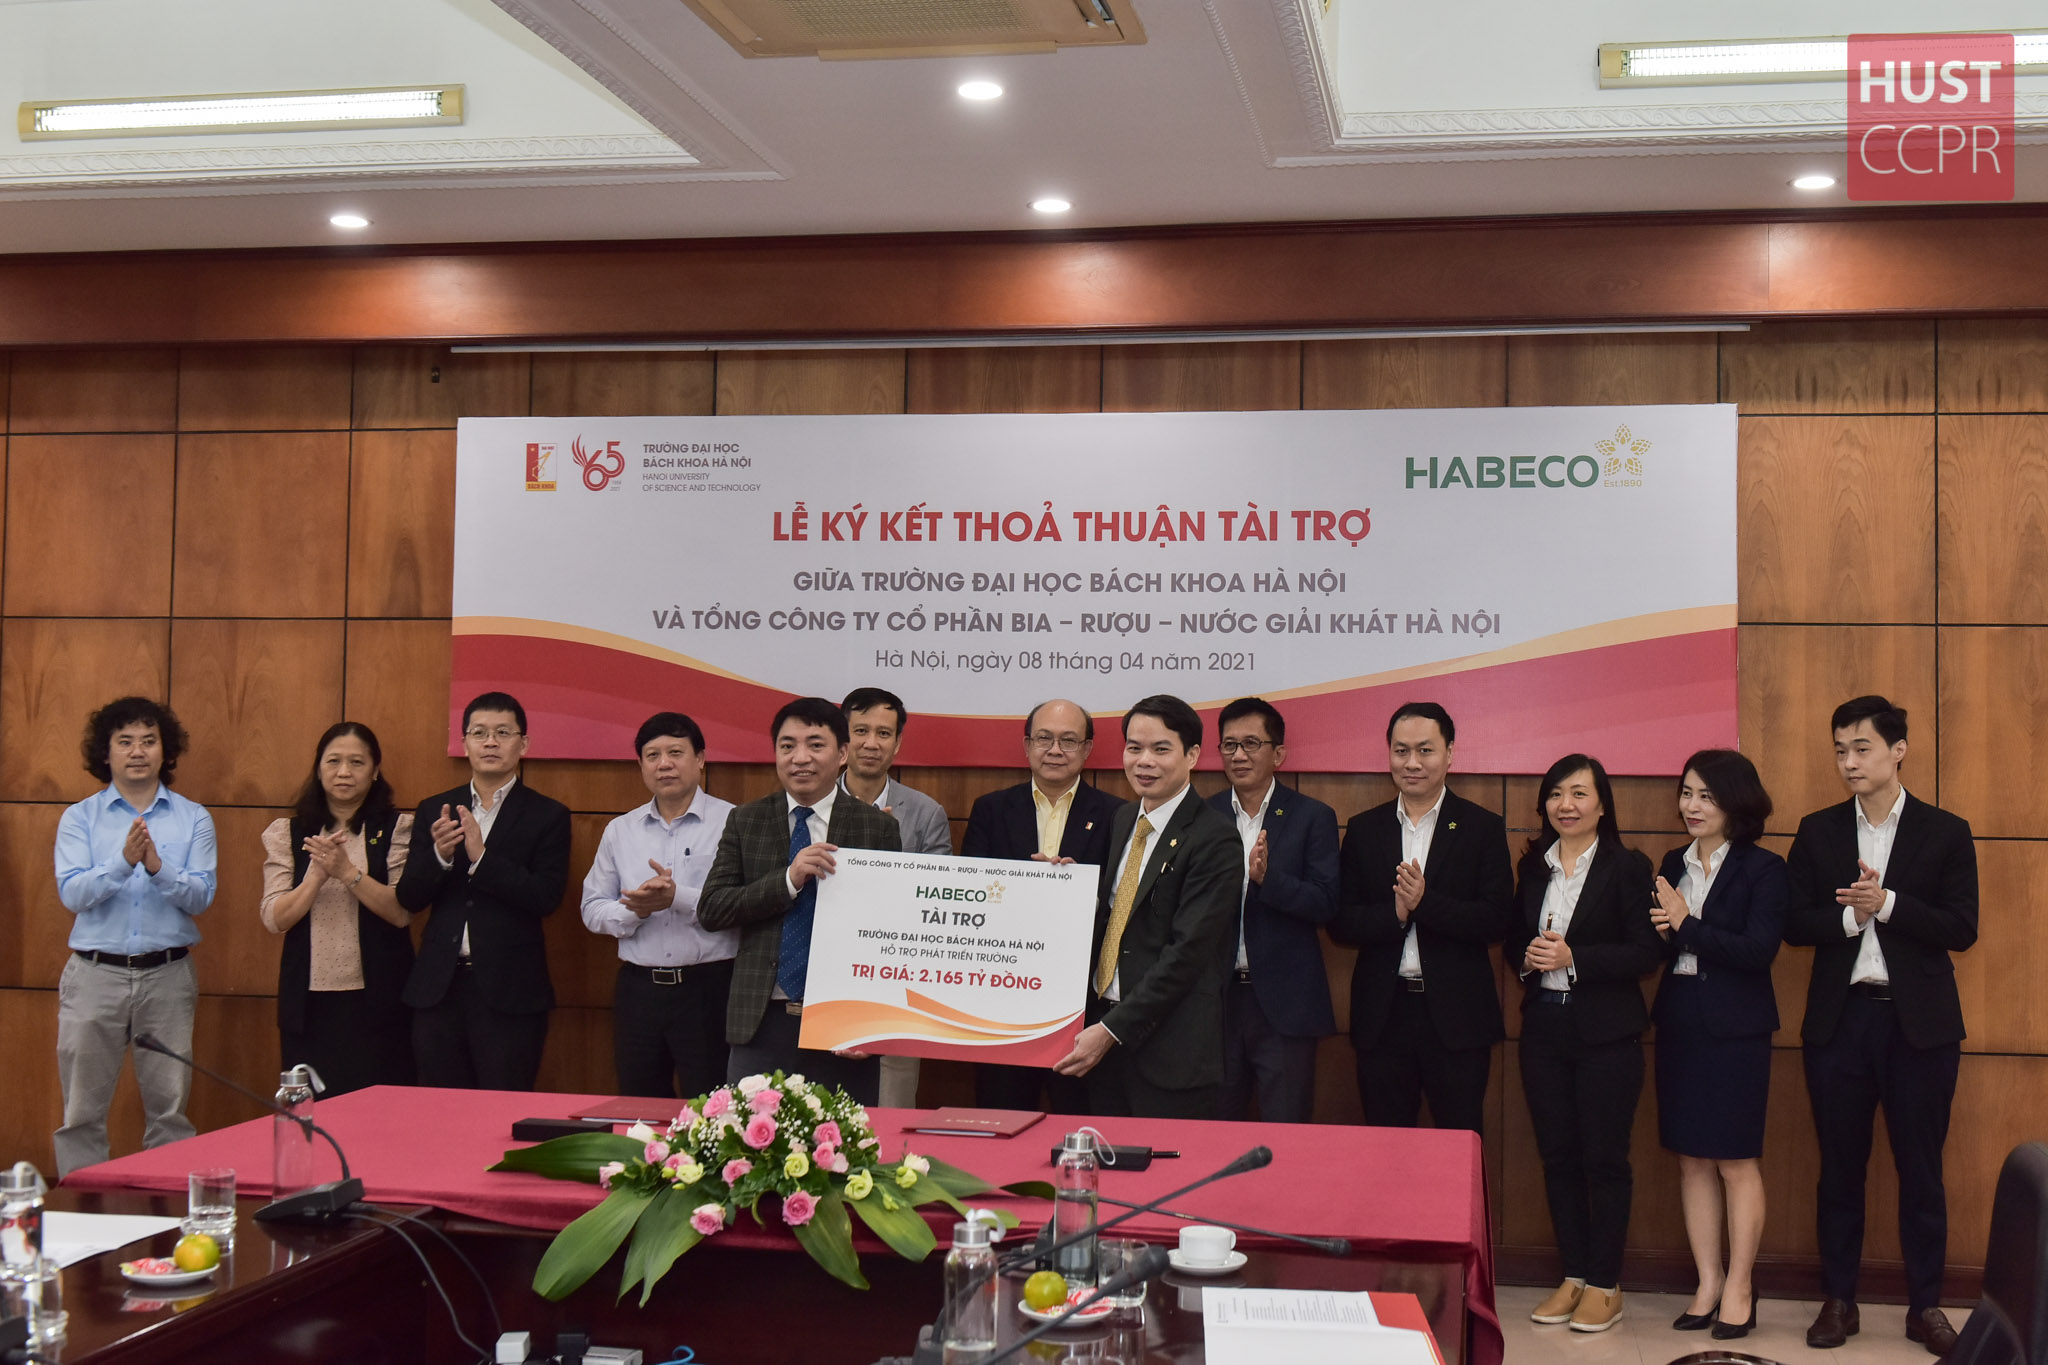 HABECO ký kết thoả thuận tài trợ với Trường Đại học Bách khoa Hà Nội